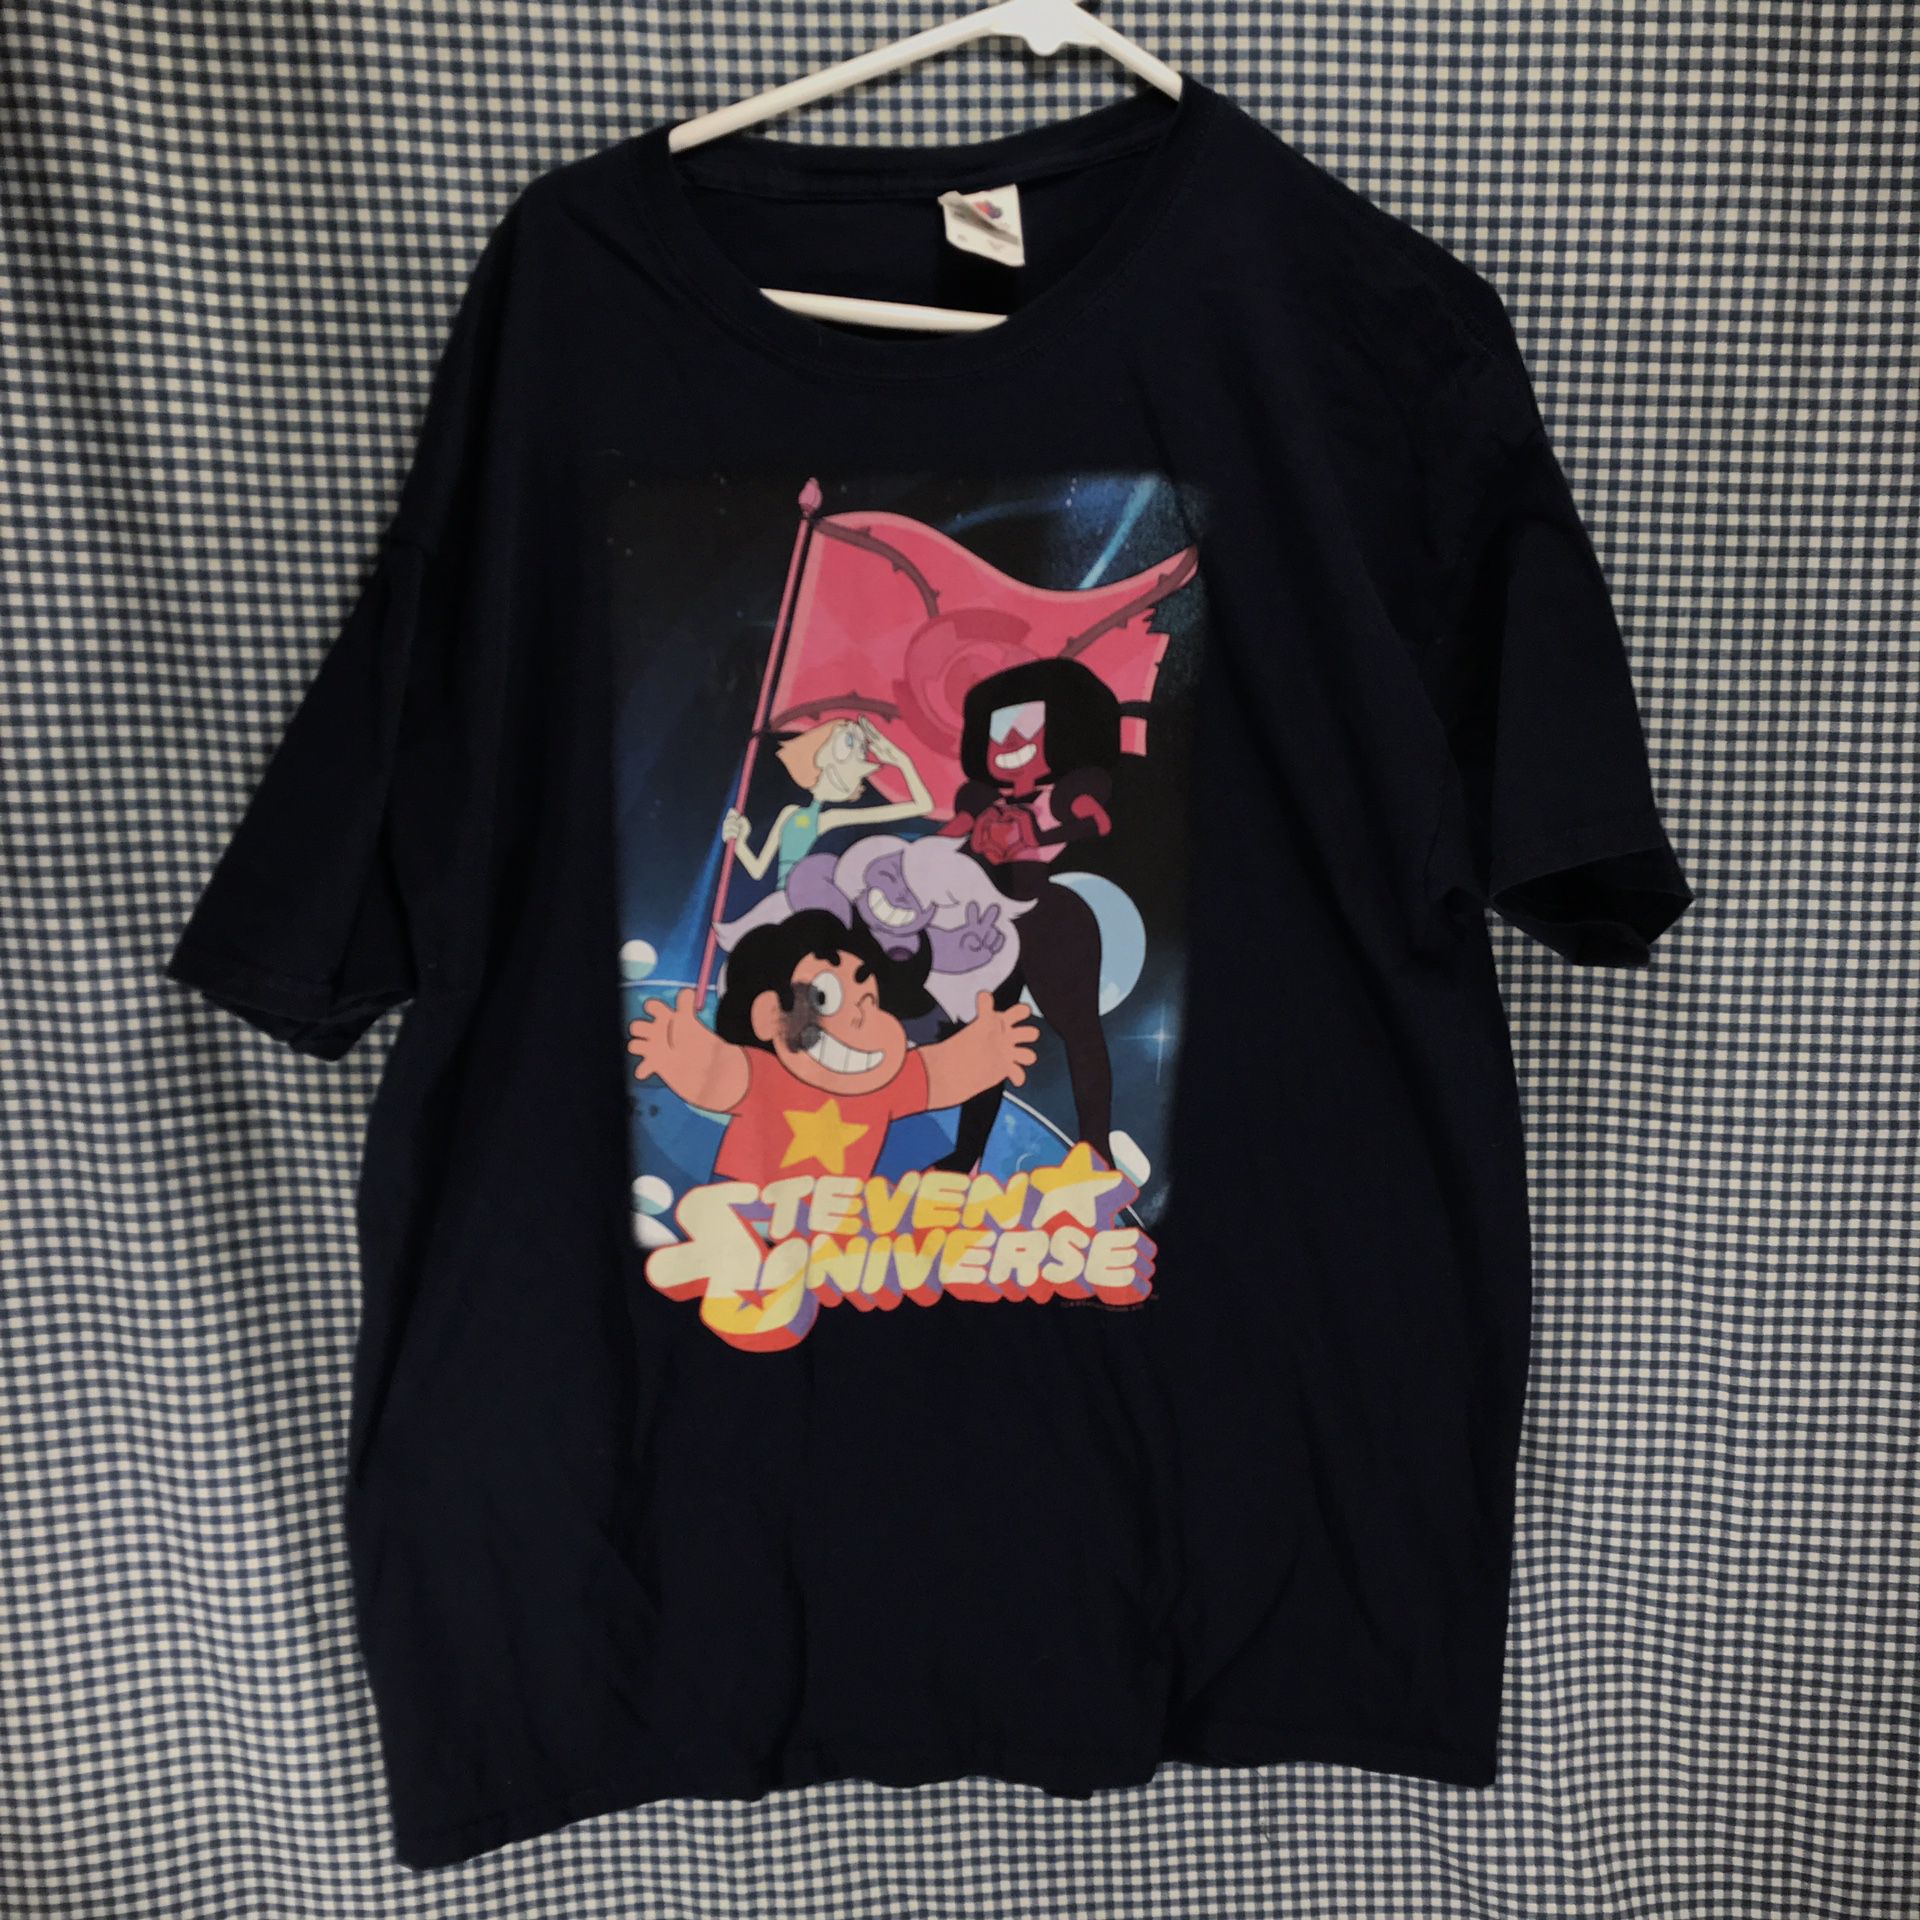 Steven Universe Cartoon Network T-Shirt Men’s Size XL